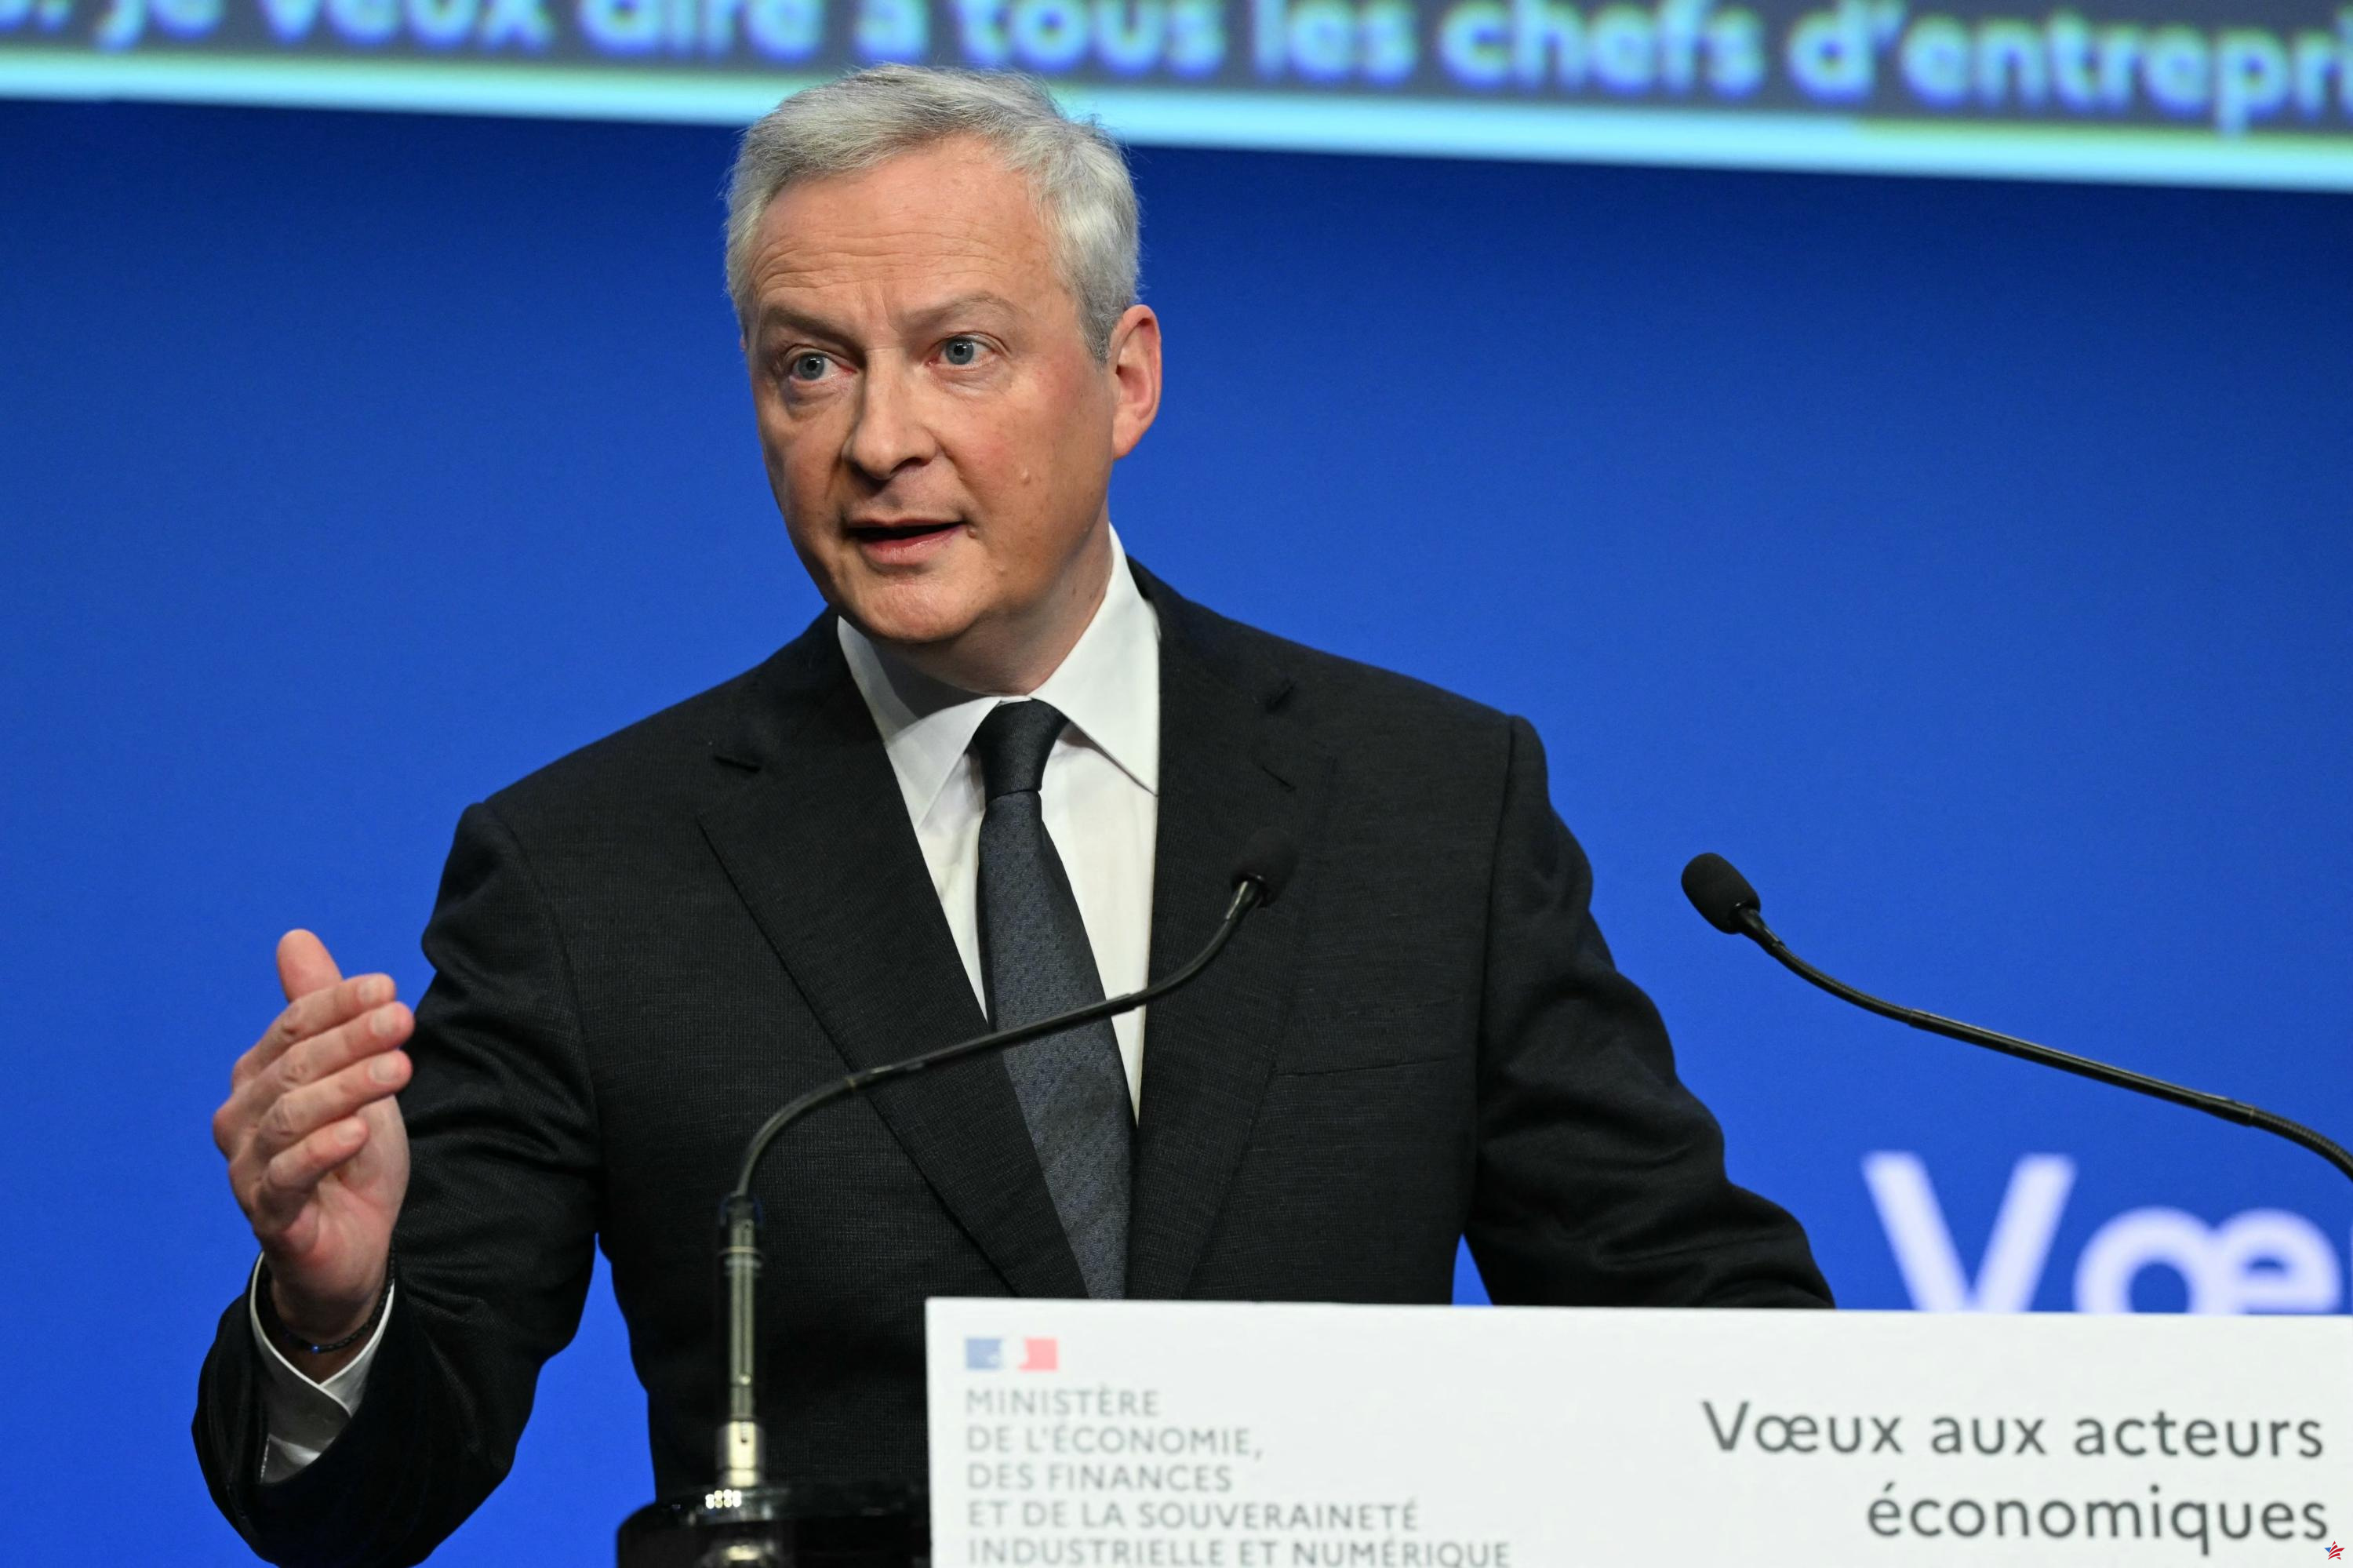 En primavera se presentará al Parlamento una ley sobre el atractivo financiero de Francia, anuncia Bruno Le Maire